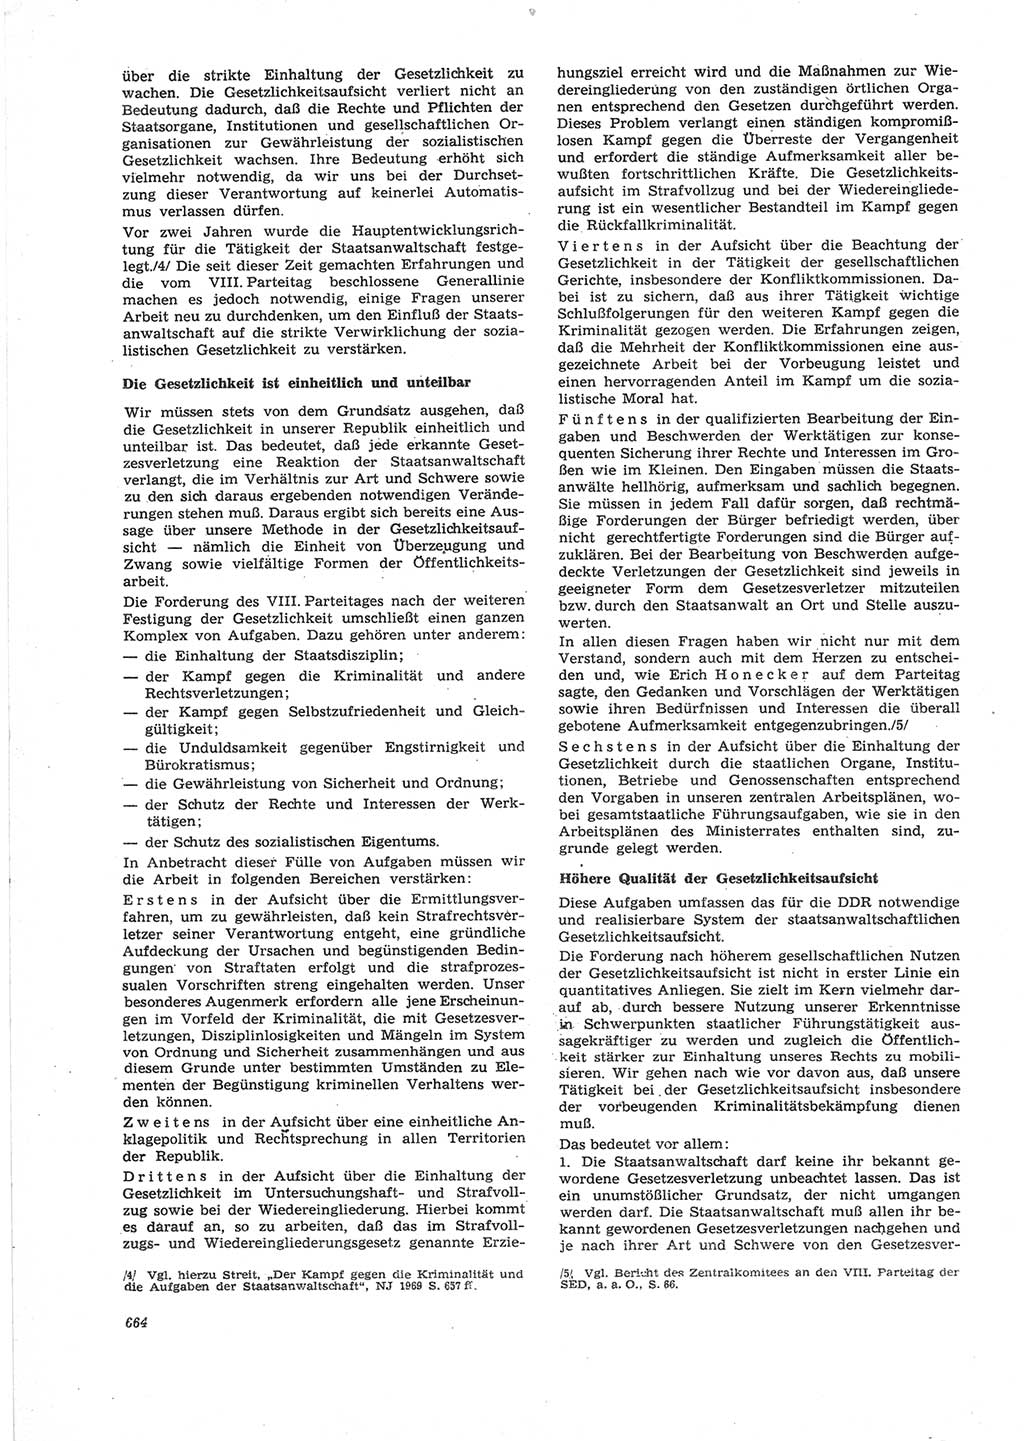 Neue Justiz (NJ), Zeitschrift für Recht und Rechtswissenschaft [Deutsche Demokratische Republik (DDR)], 25. Jahrgang 1971, Seite 664 (NJ DDR 1971, S. 664)